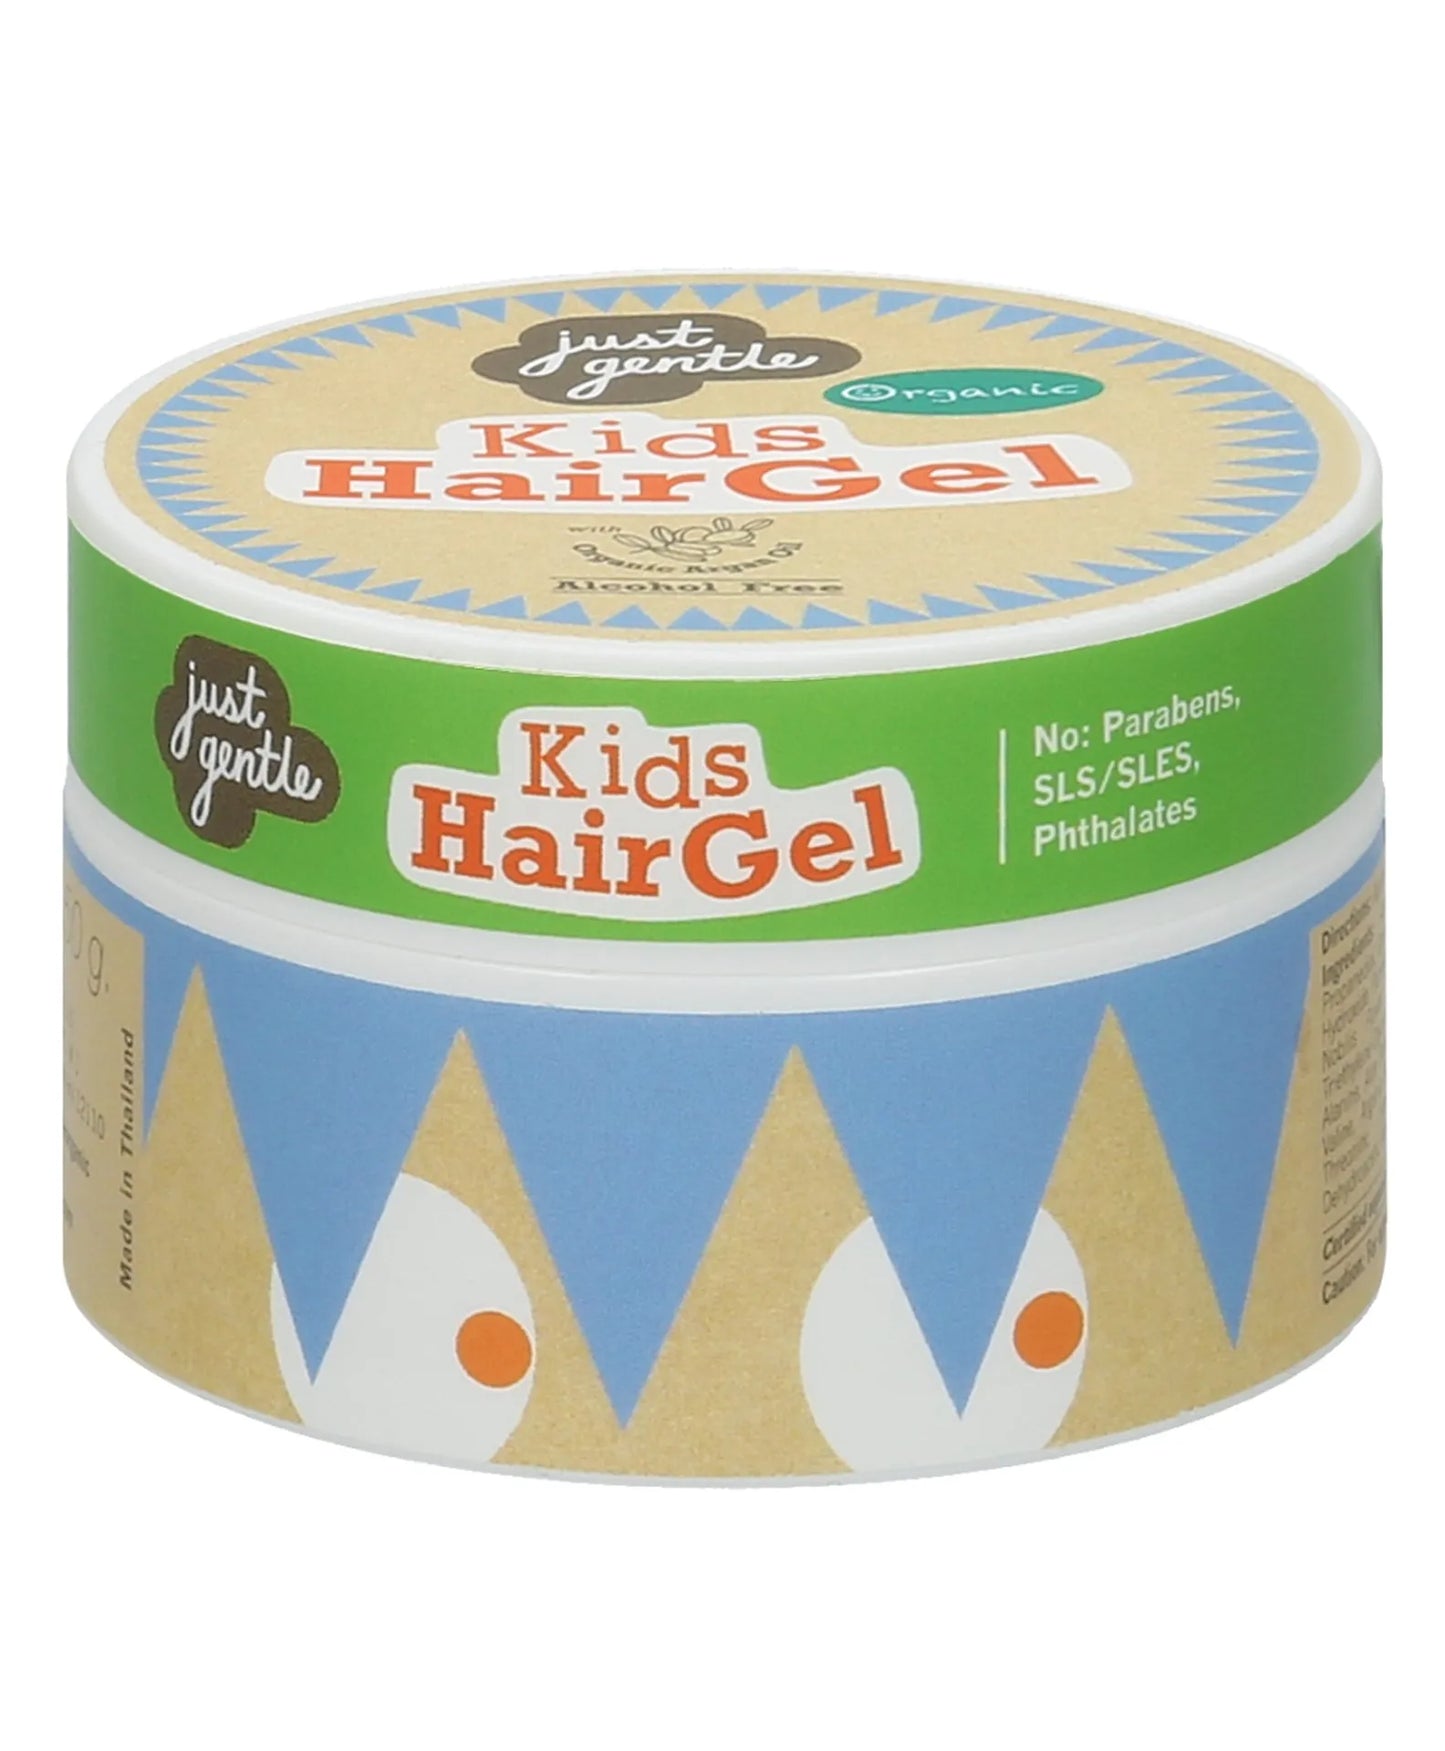 Just Gentle Kids Hair Gel - 50gm